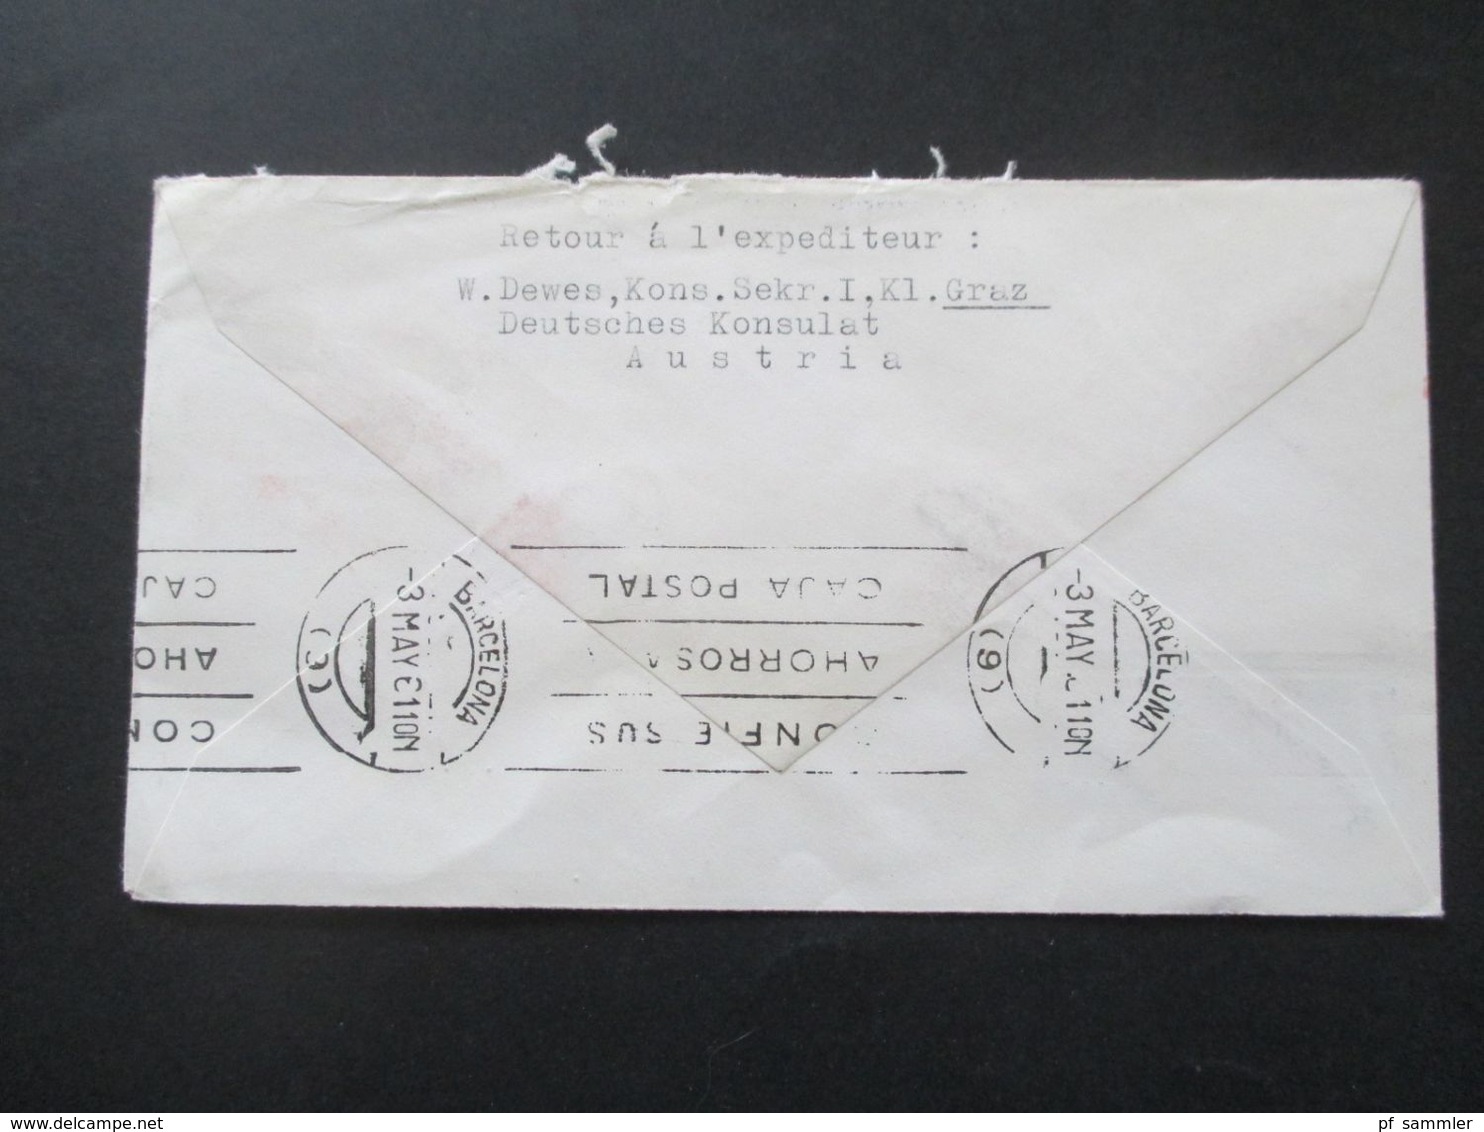 Österreich 1960 / 61 AUA Erstflüge 9 Belege + 1x Luposta Sternflug. Flugpost Belege / Poste Restante - Lettres & Documents